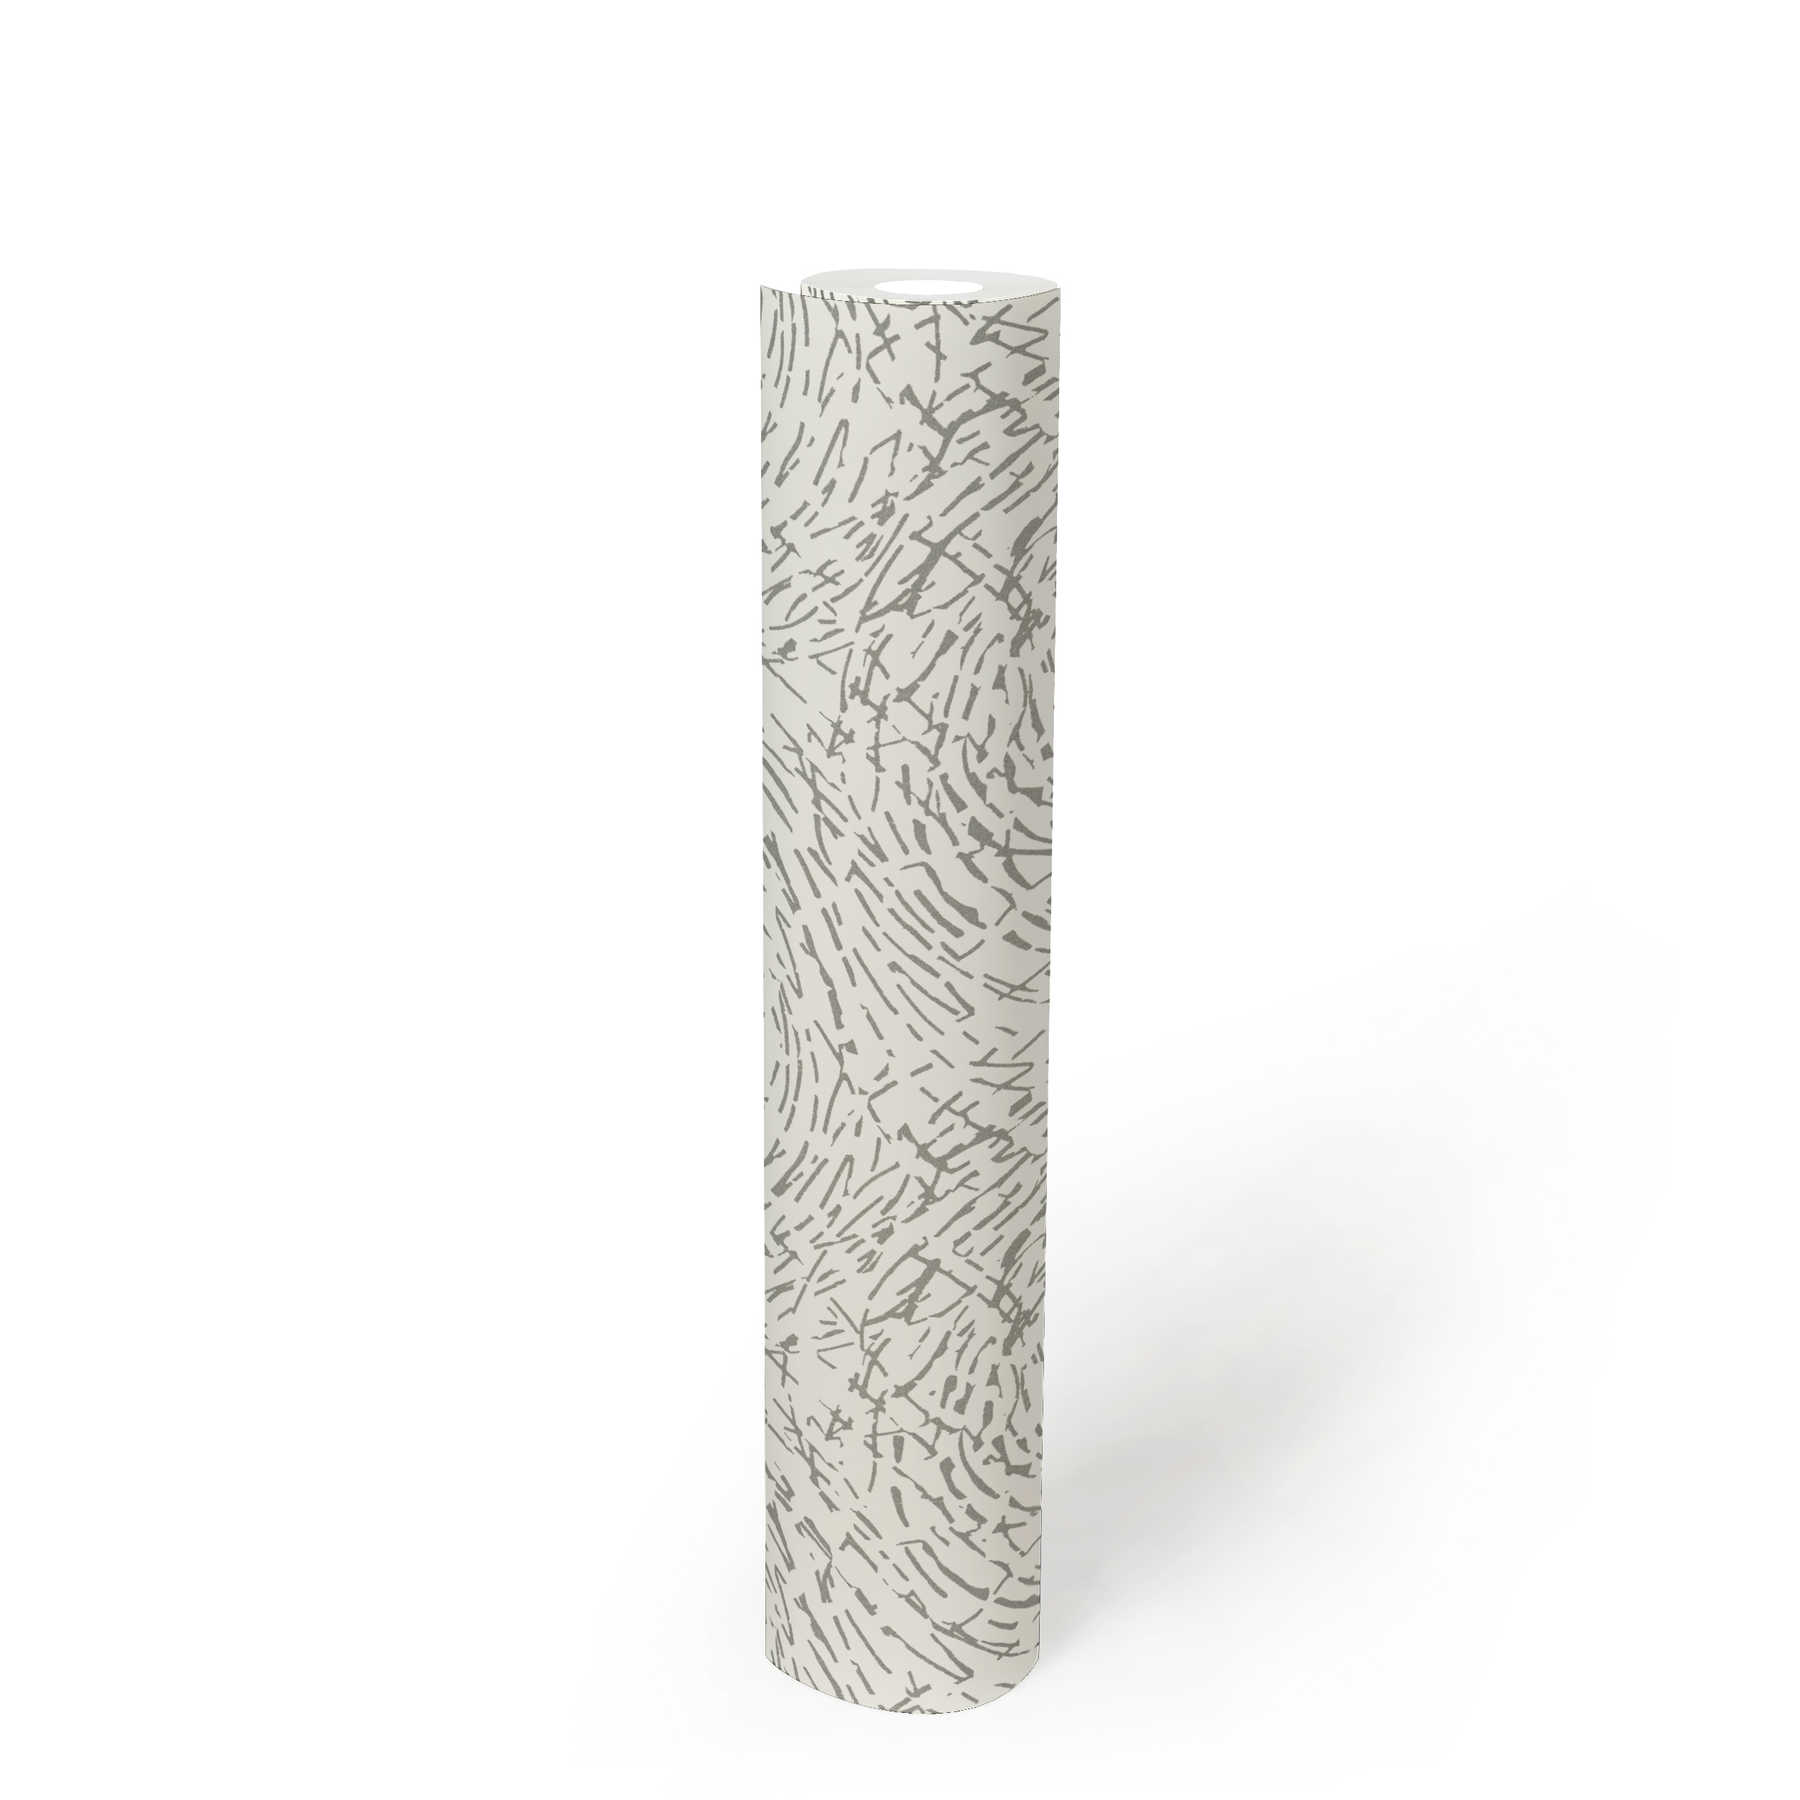             papier peint en papier Ethno Style avec couleur métallique & design structuré - argent, blanc
        